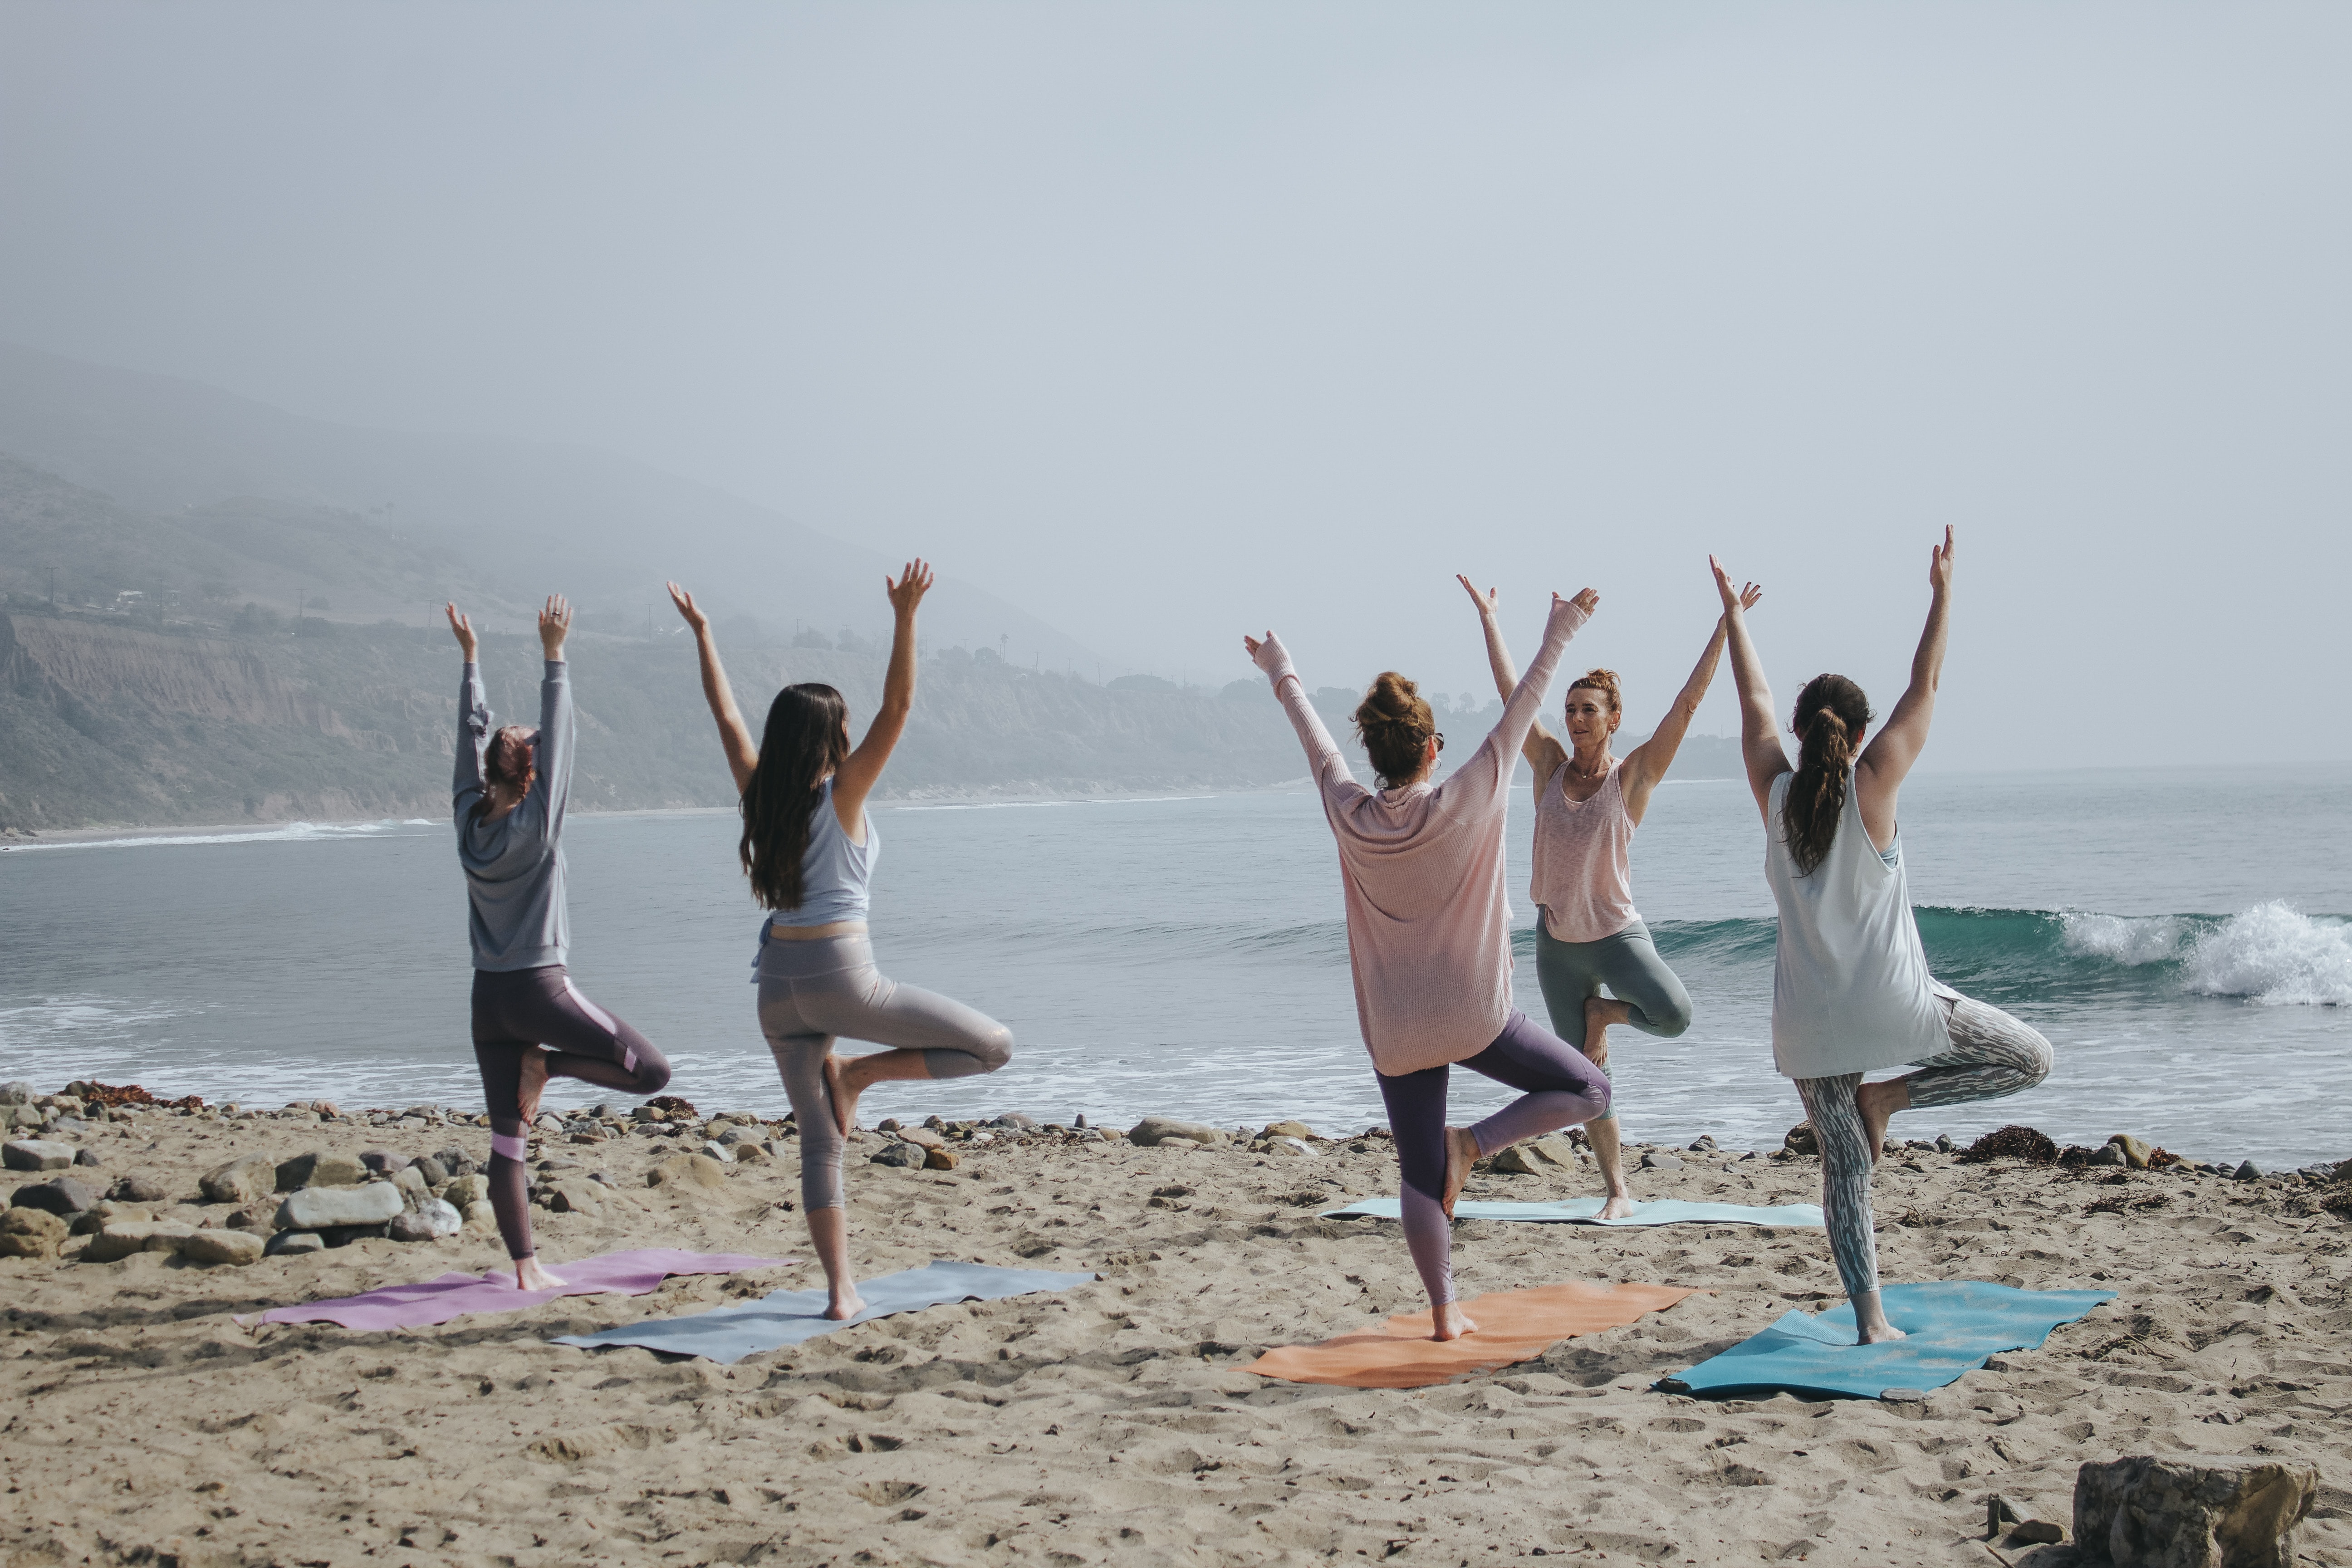 A group doing yoga on the beach.